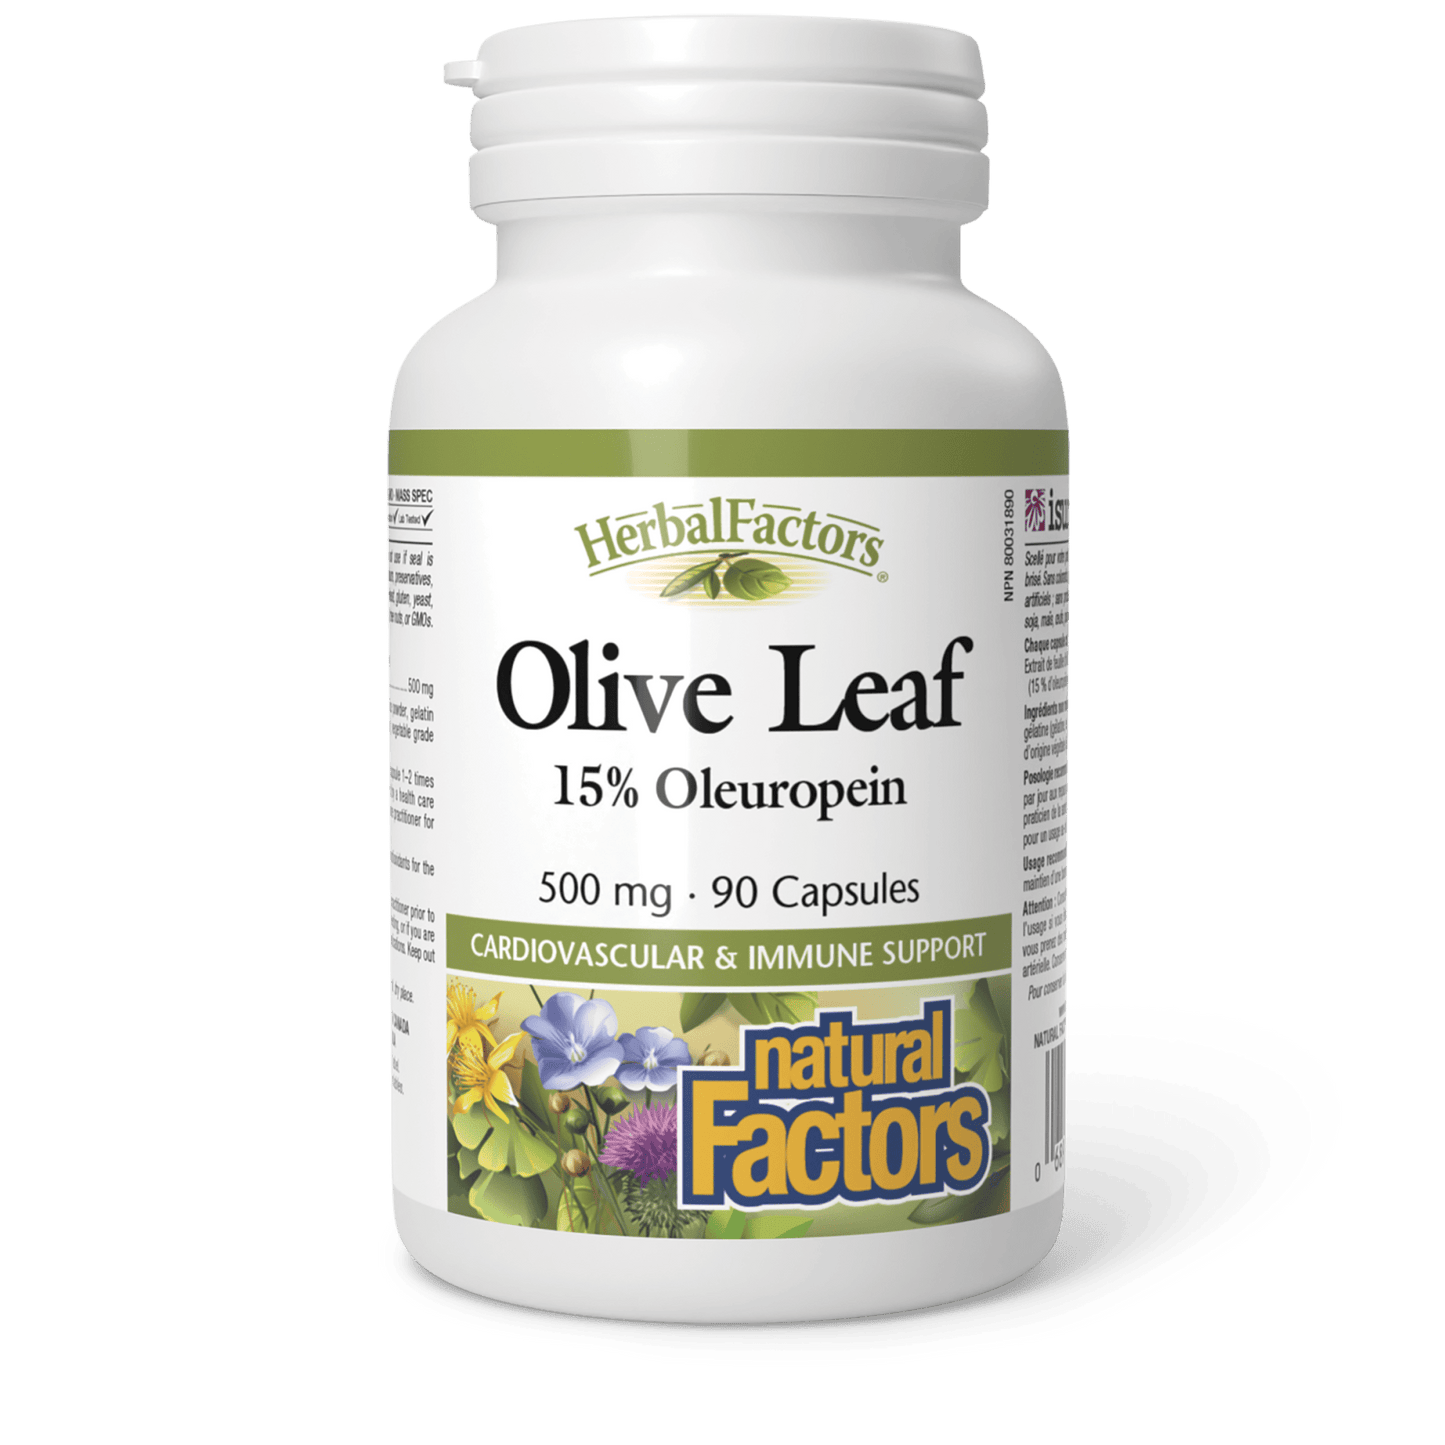 Olive Leaf 500 mg, HerbalFactors, Natural Factors|v|image|4570